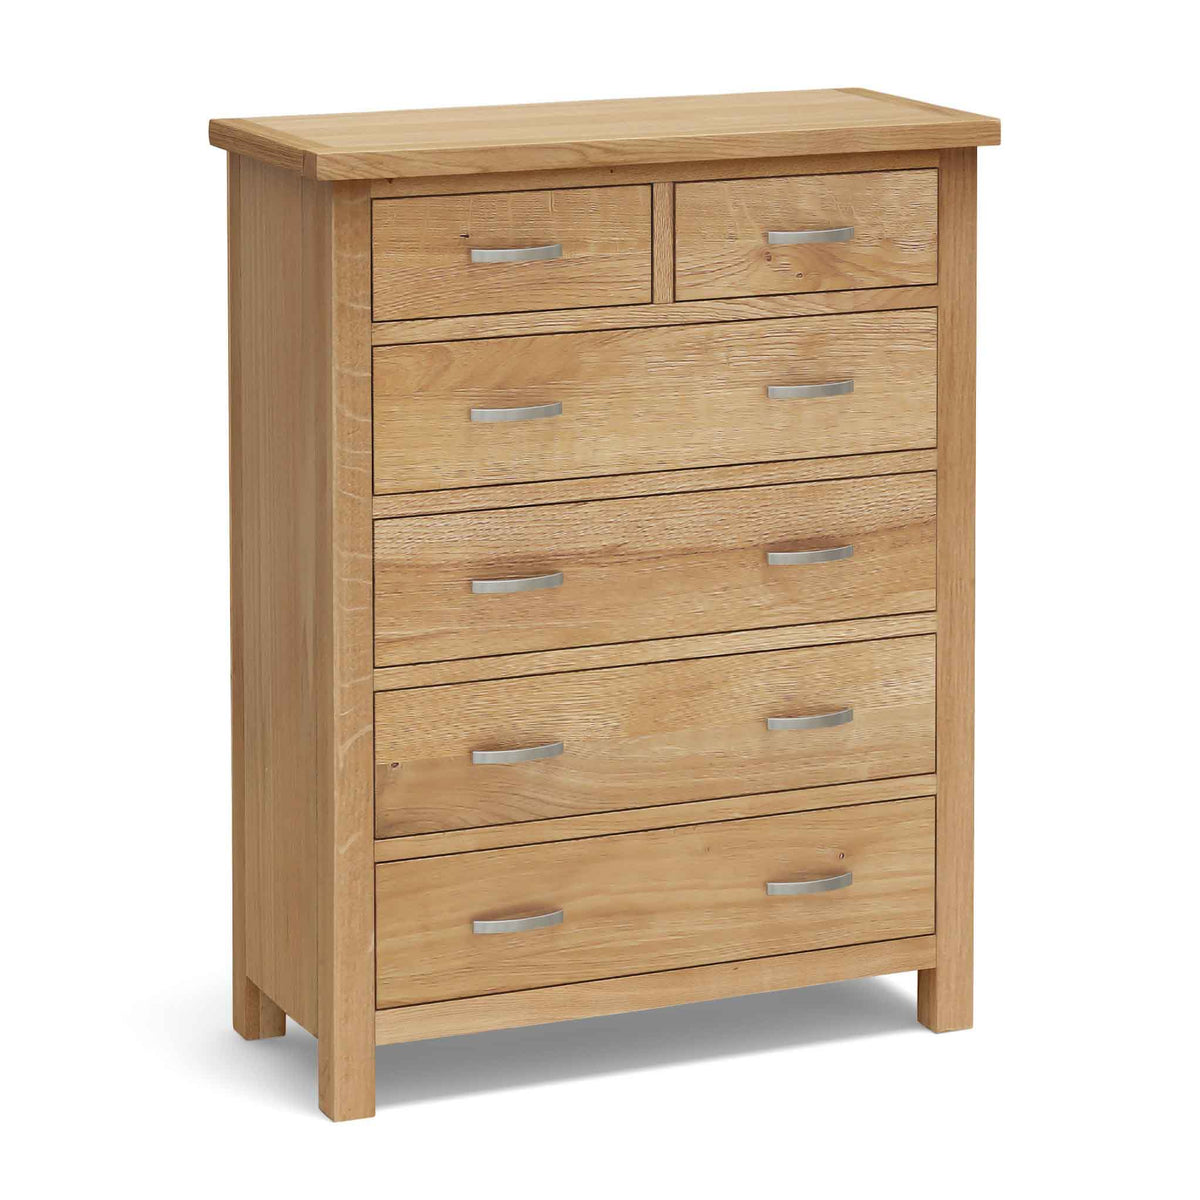 Light oak chest of drawers from Roseland Furniture's London range. 